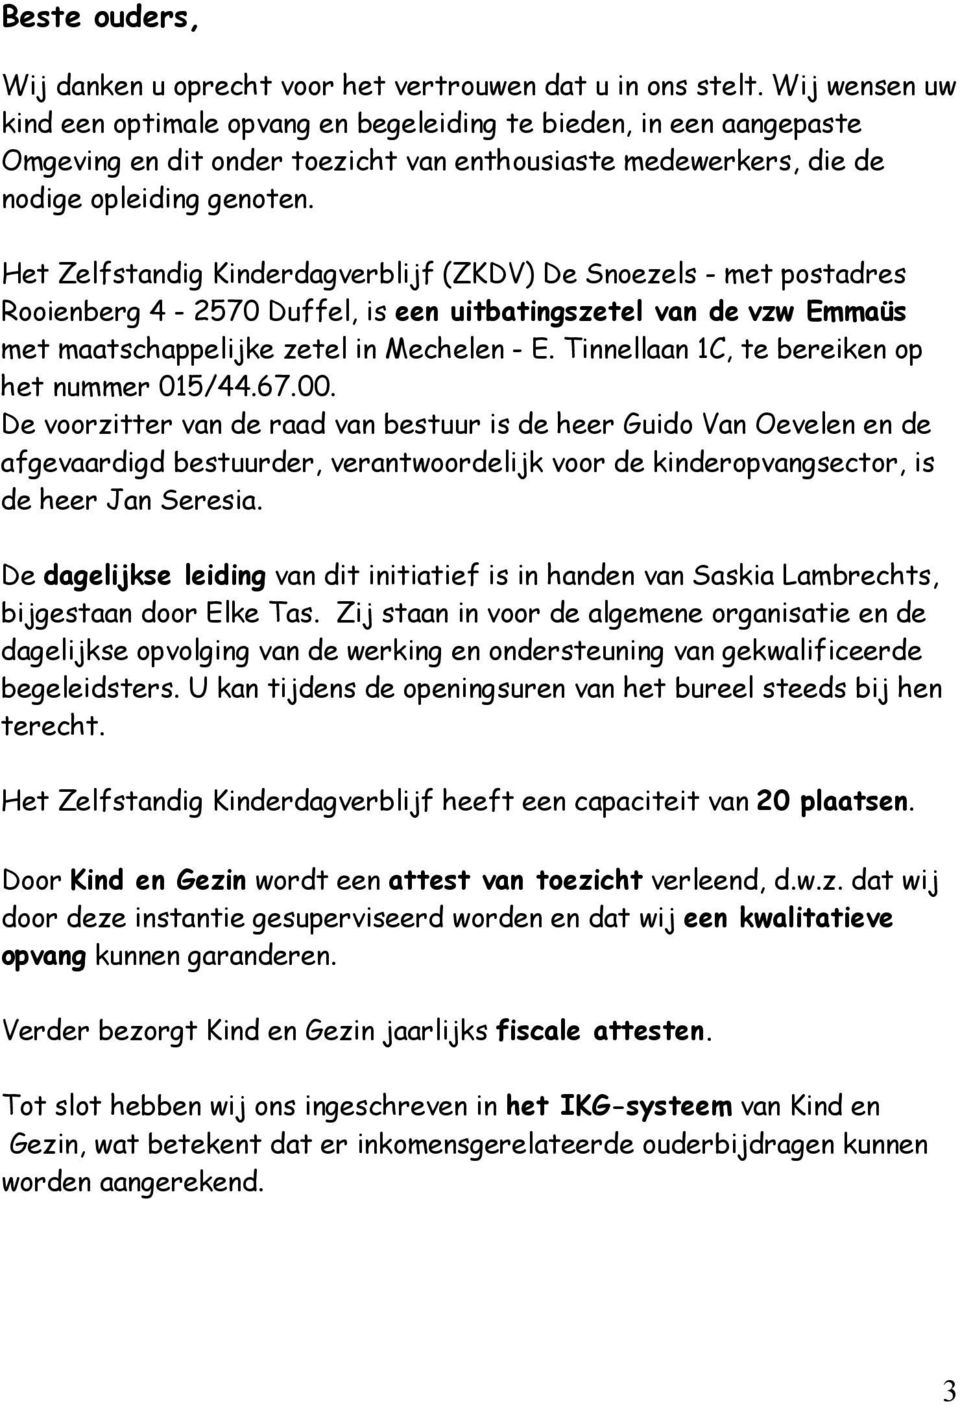 Het Zelfstandig Kinderdagverblijf (ZKDV) De Snoezels - met postadres Rooienberg 4-2570 Duffel, is een uitbatingszetel van de vzw Emmaüs met maatschappelijke zetel in Mechelen - E.